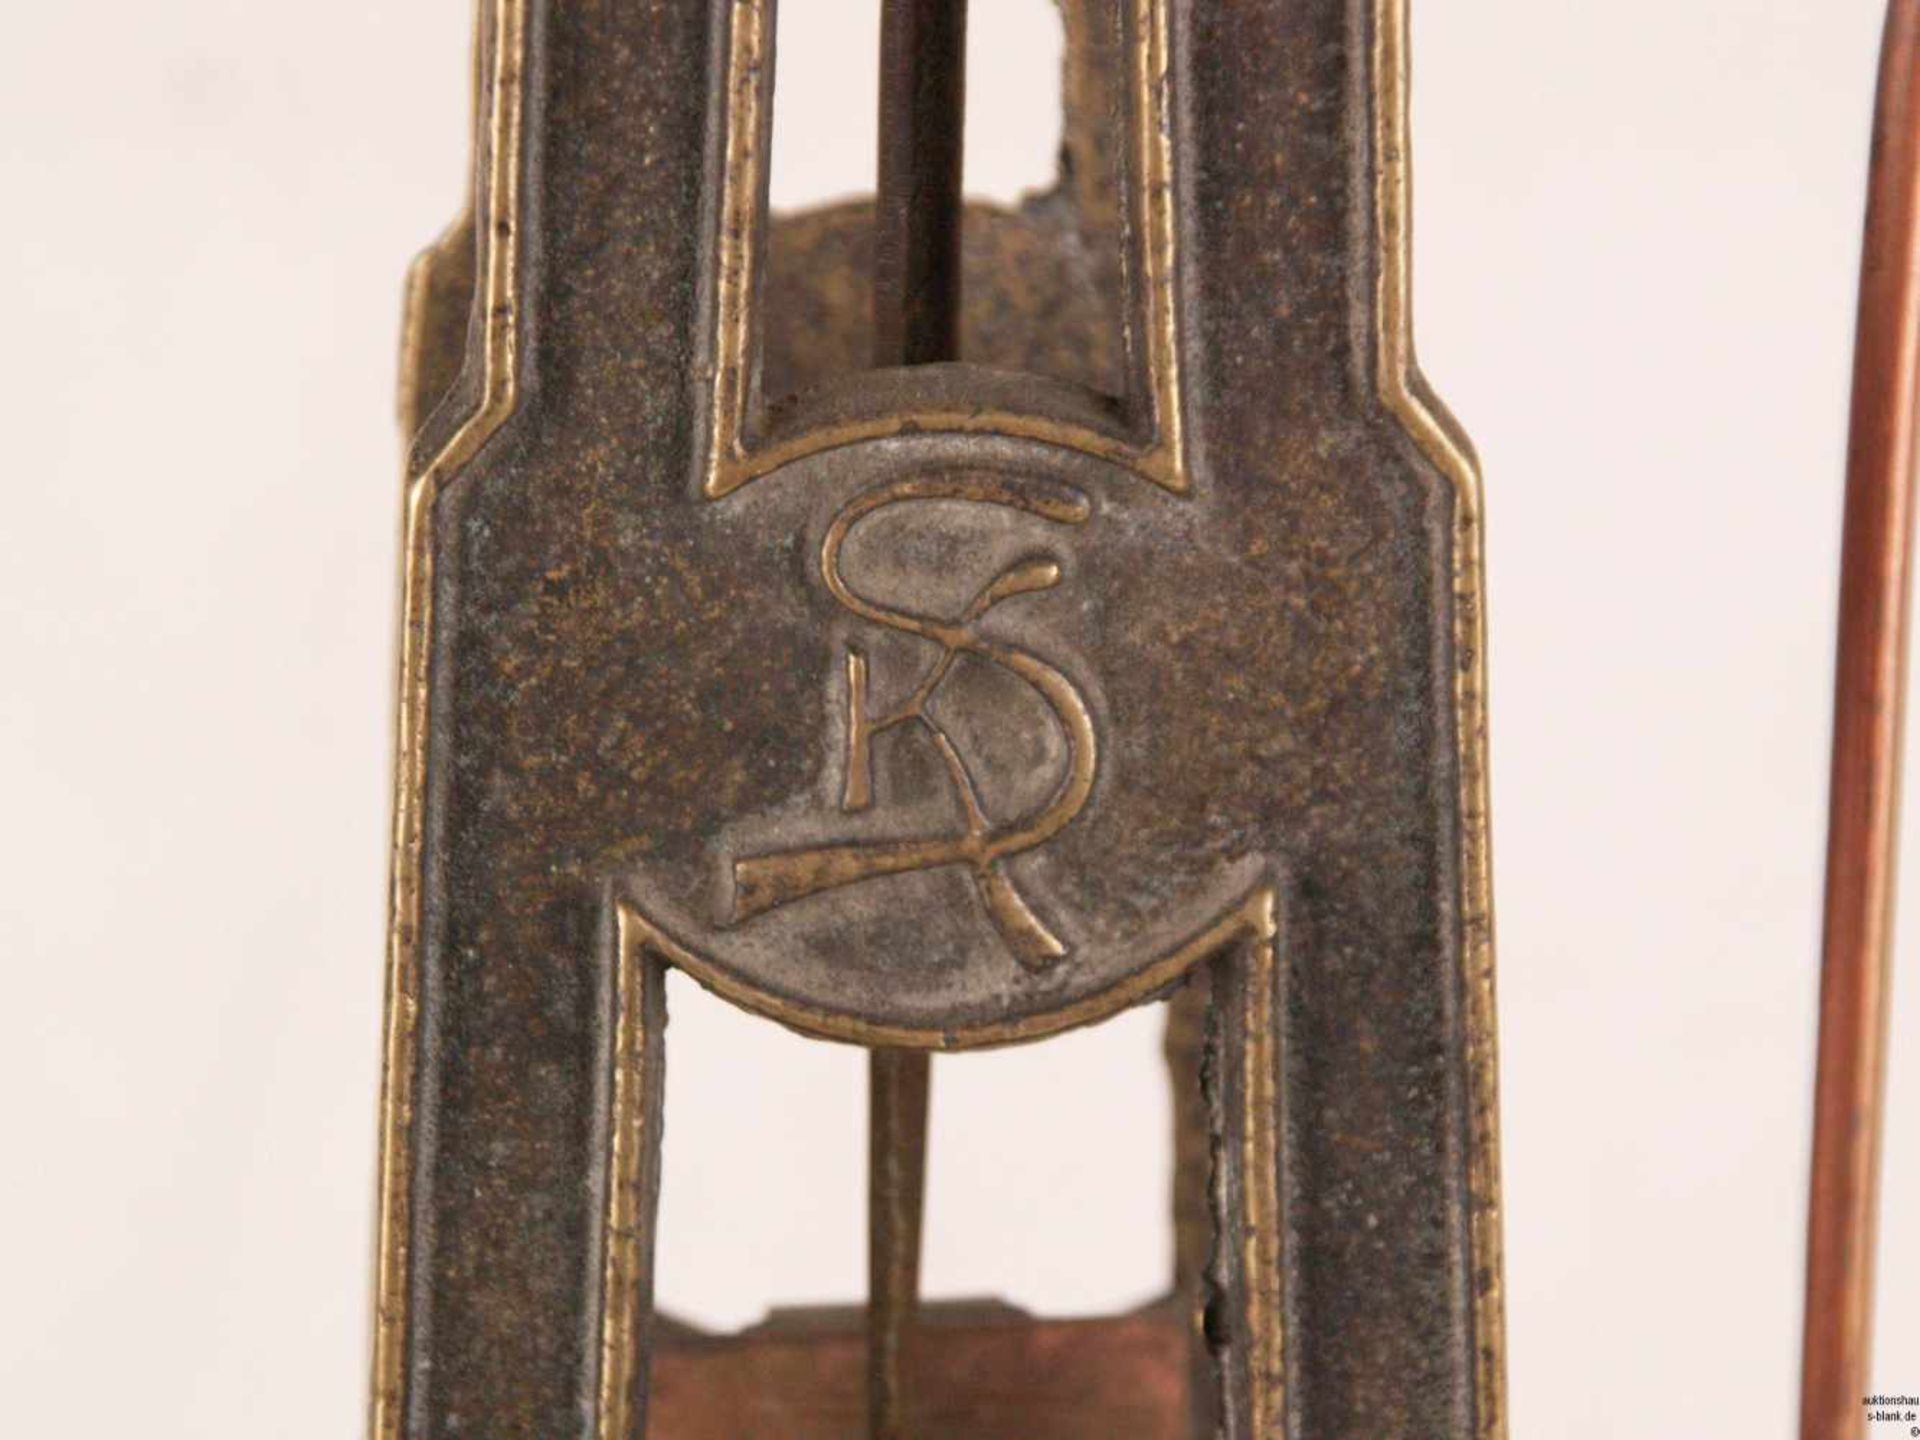 Balkenwaage - Metall/Holz, durchbrochen gearbeiteter Schaft mit Monogramm "KS", zwei runde - Bild 4 aus 7